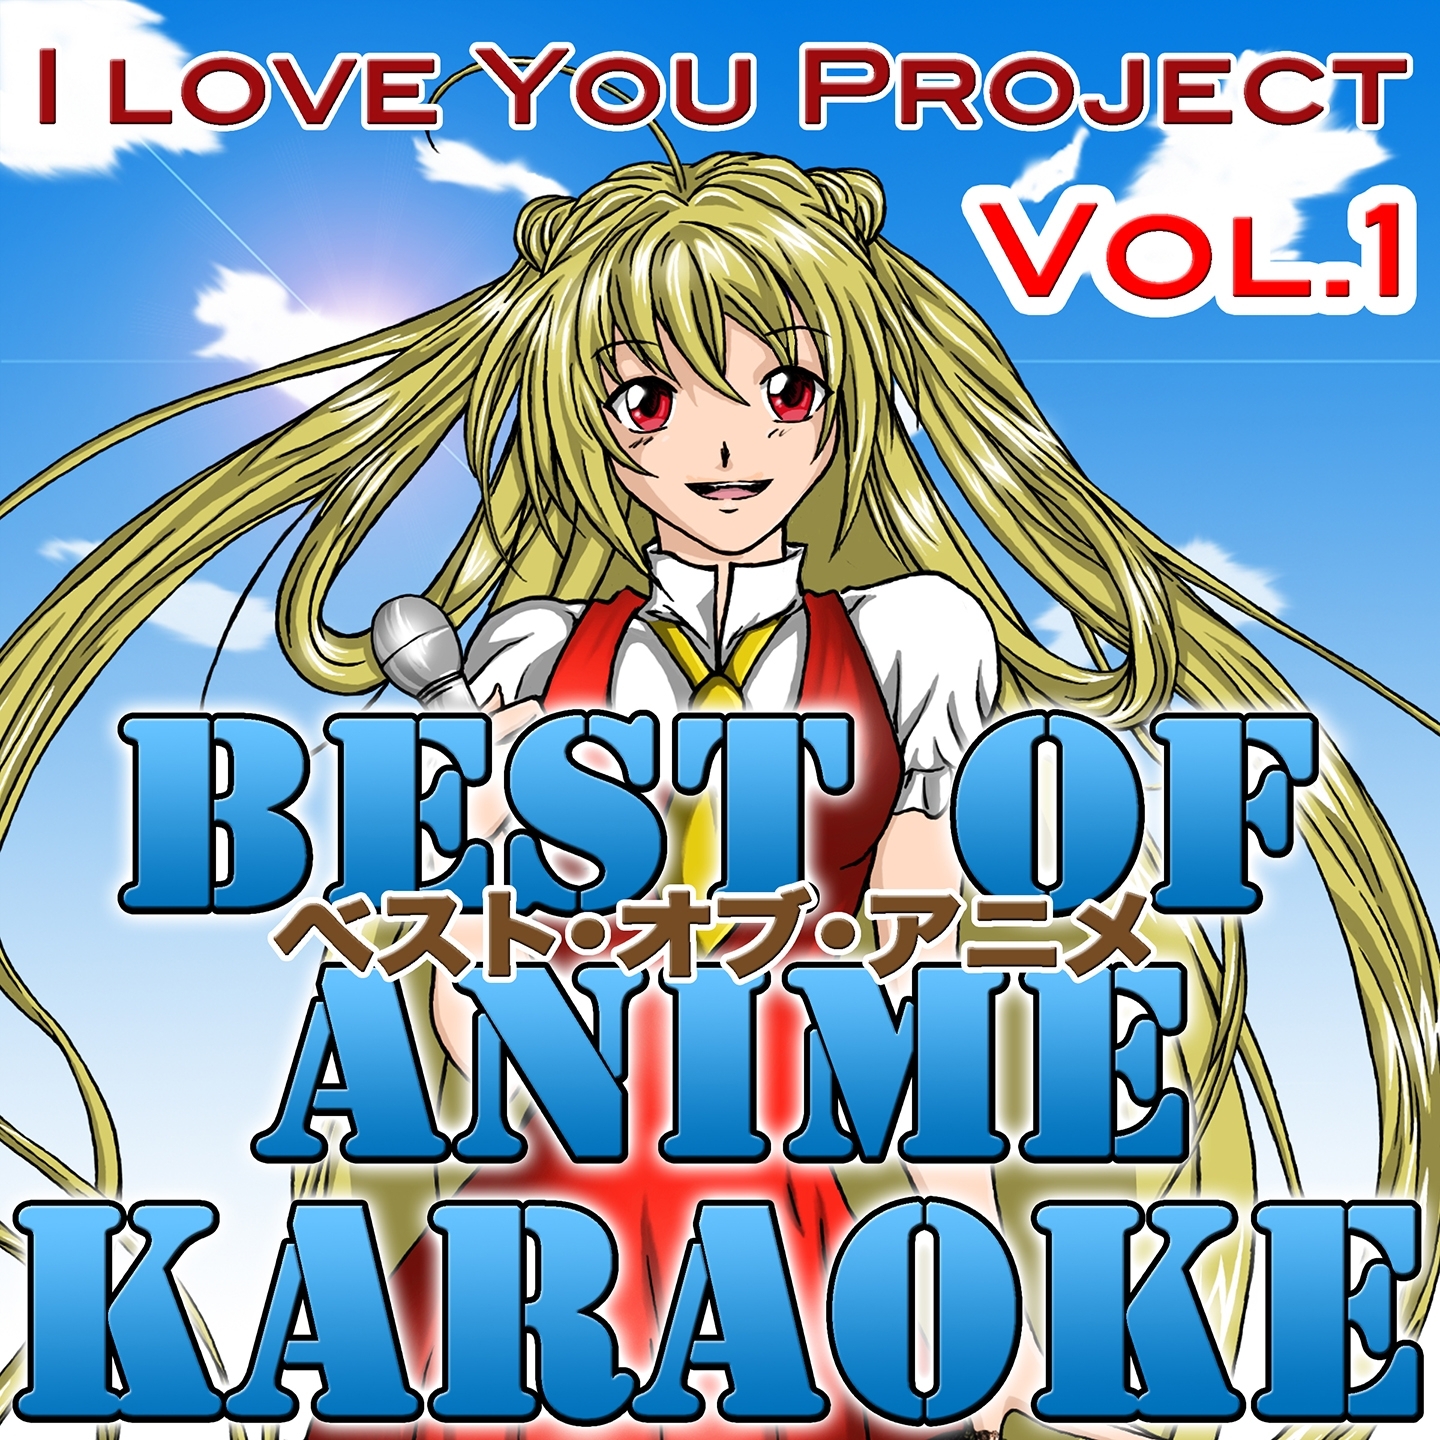 Best of Anime, Vol. 1 (Karaoke Version)